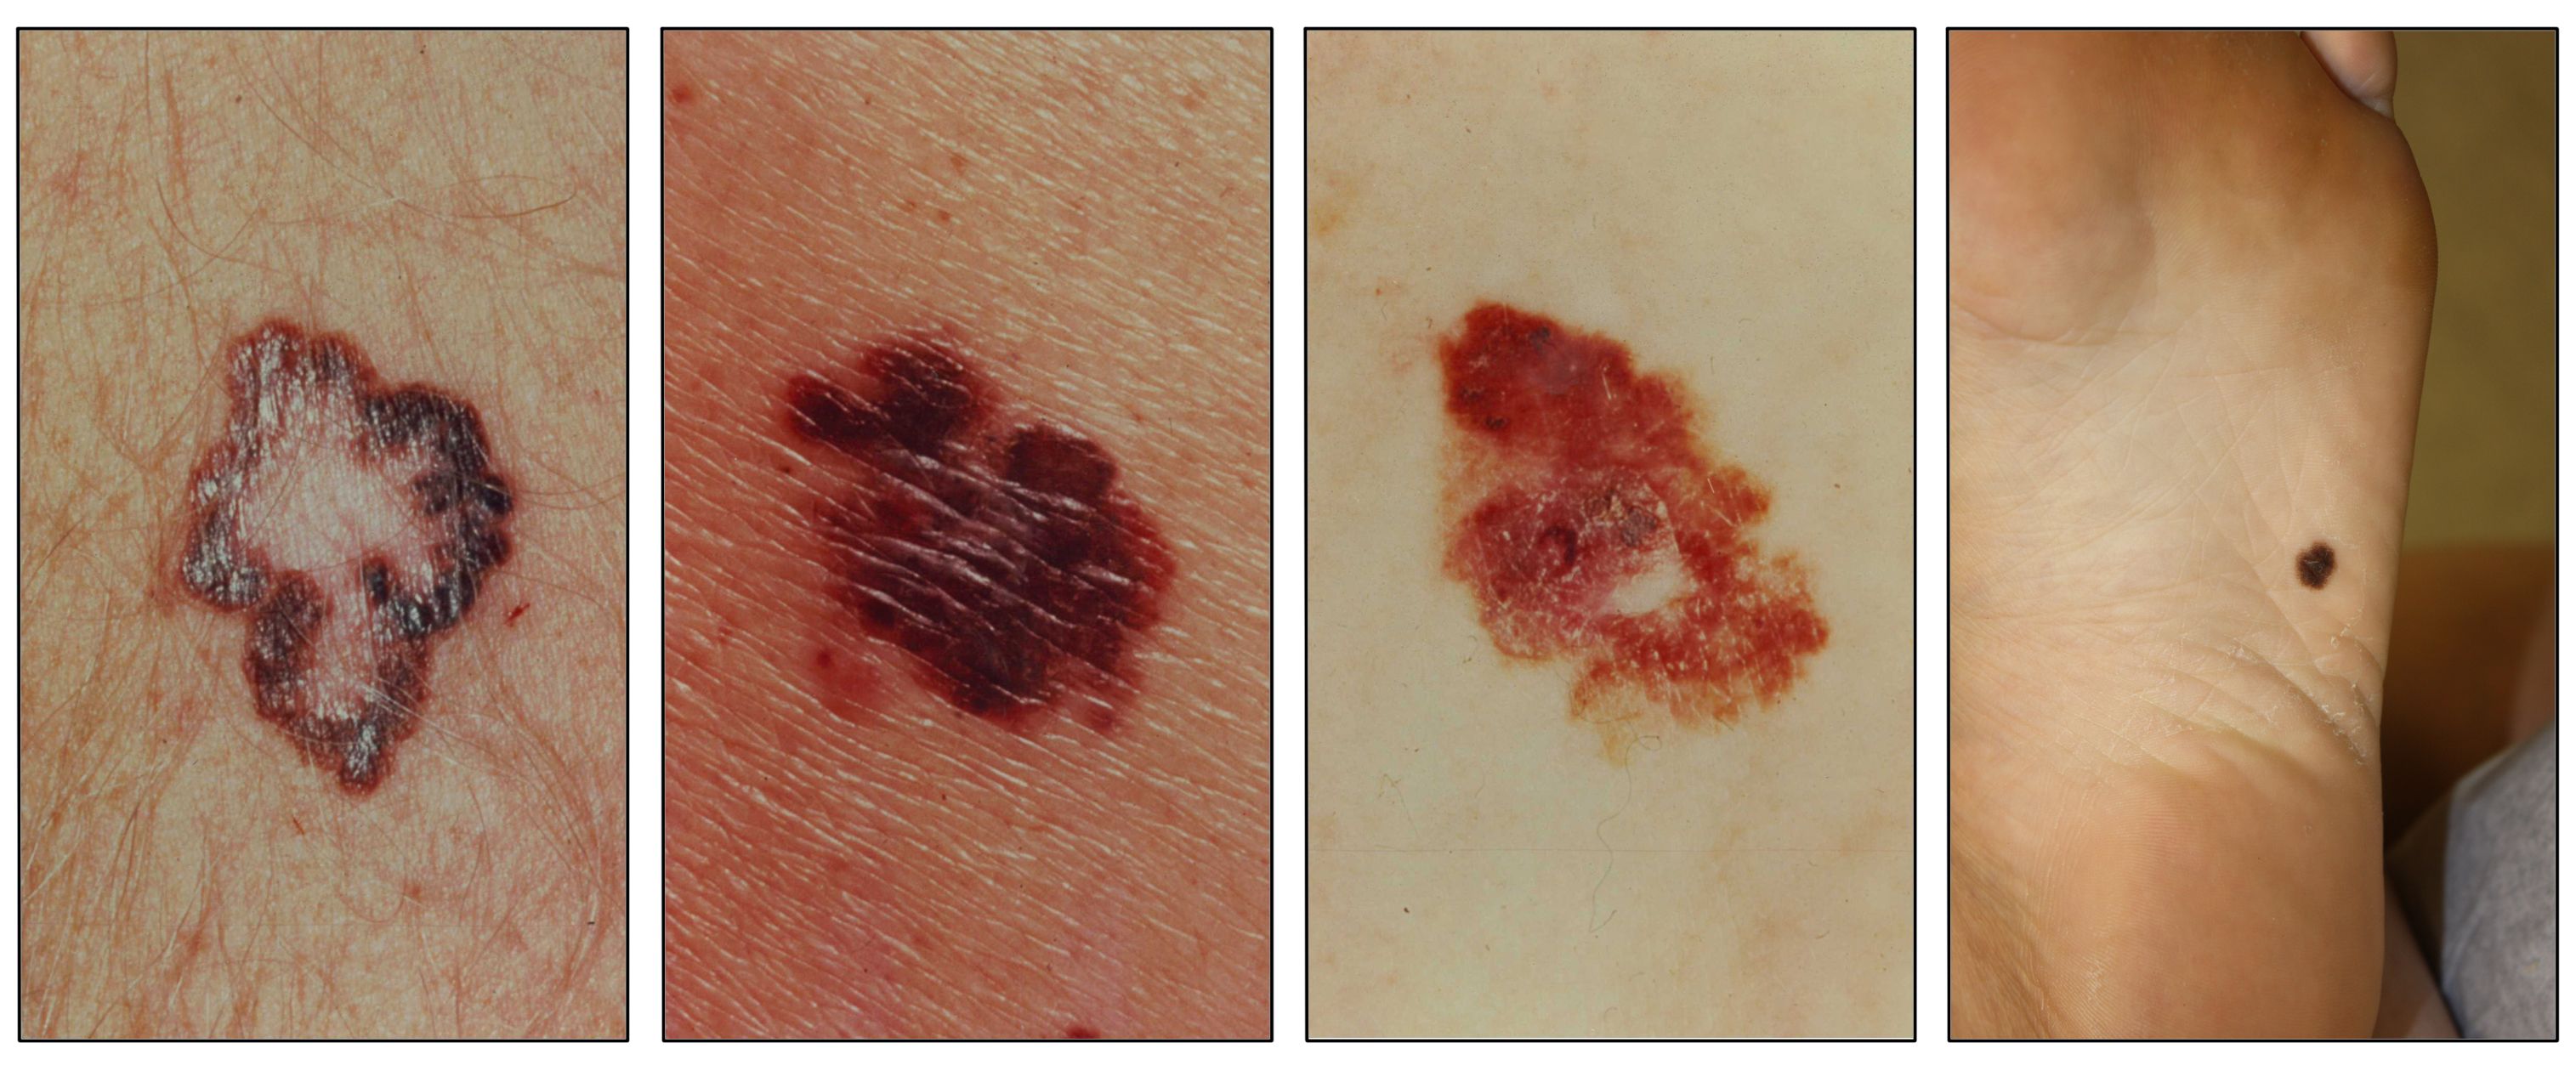 皮膚上に大きく境界が不均一な褐色の病変を示す写真（左から1枚目）；皮膚上に大きく非対称な赤褐色の病変を示す写真（2、3枚目）；足の裏の皮膚上に非対称な褐色の病変を示す写真（4枚目）。